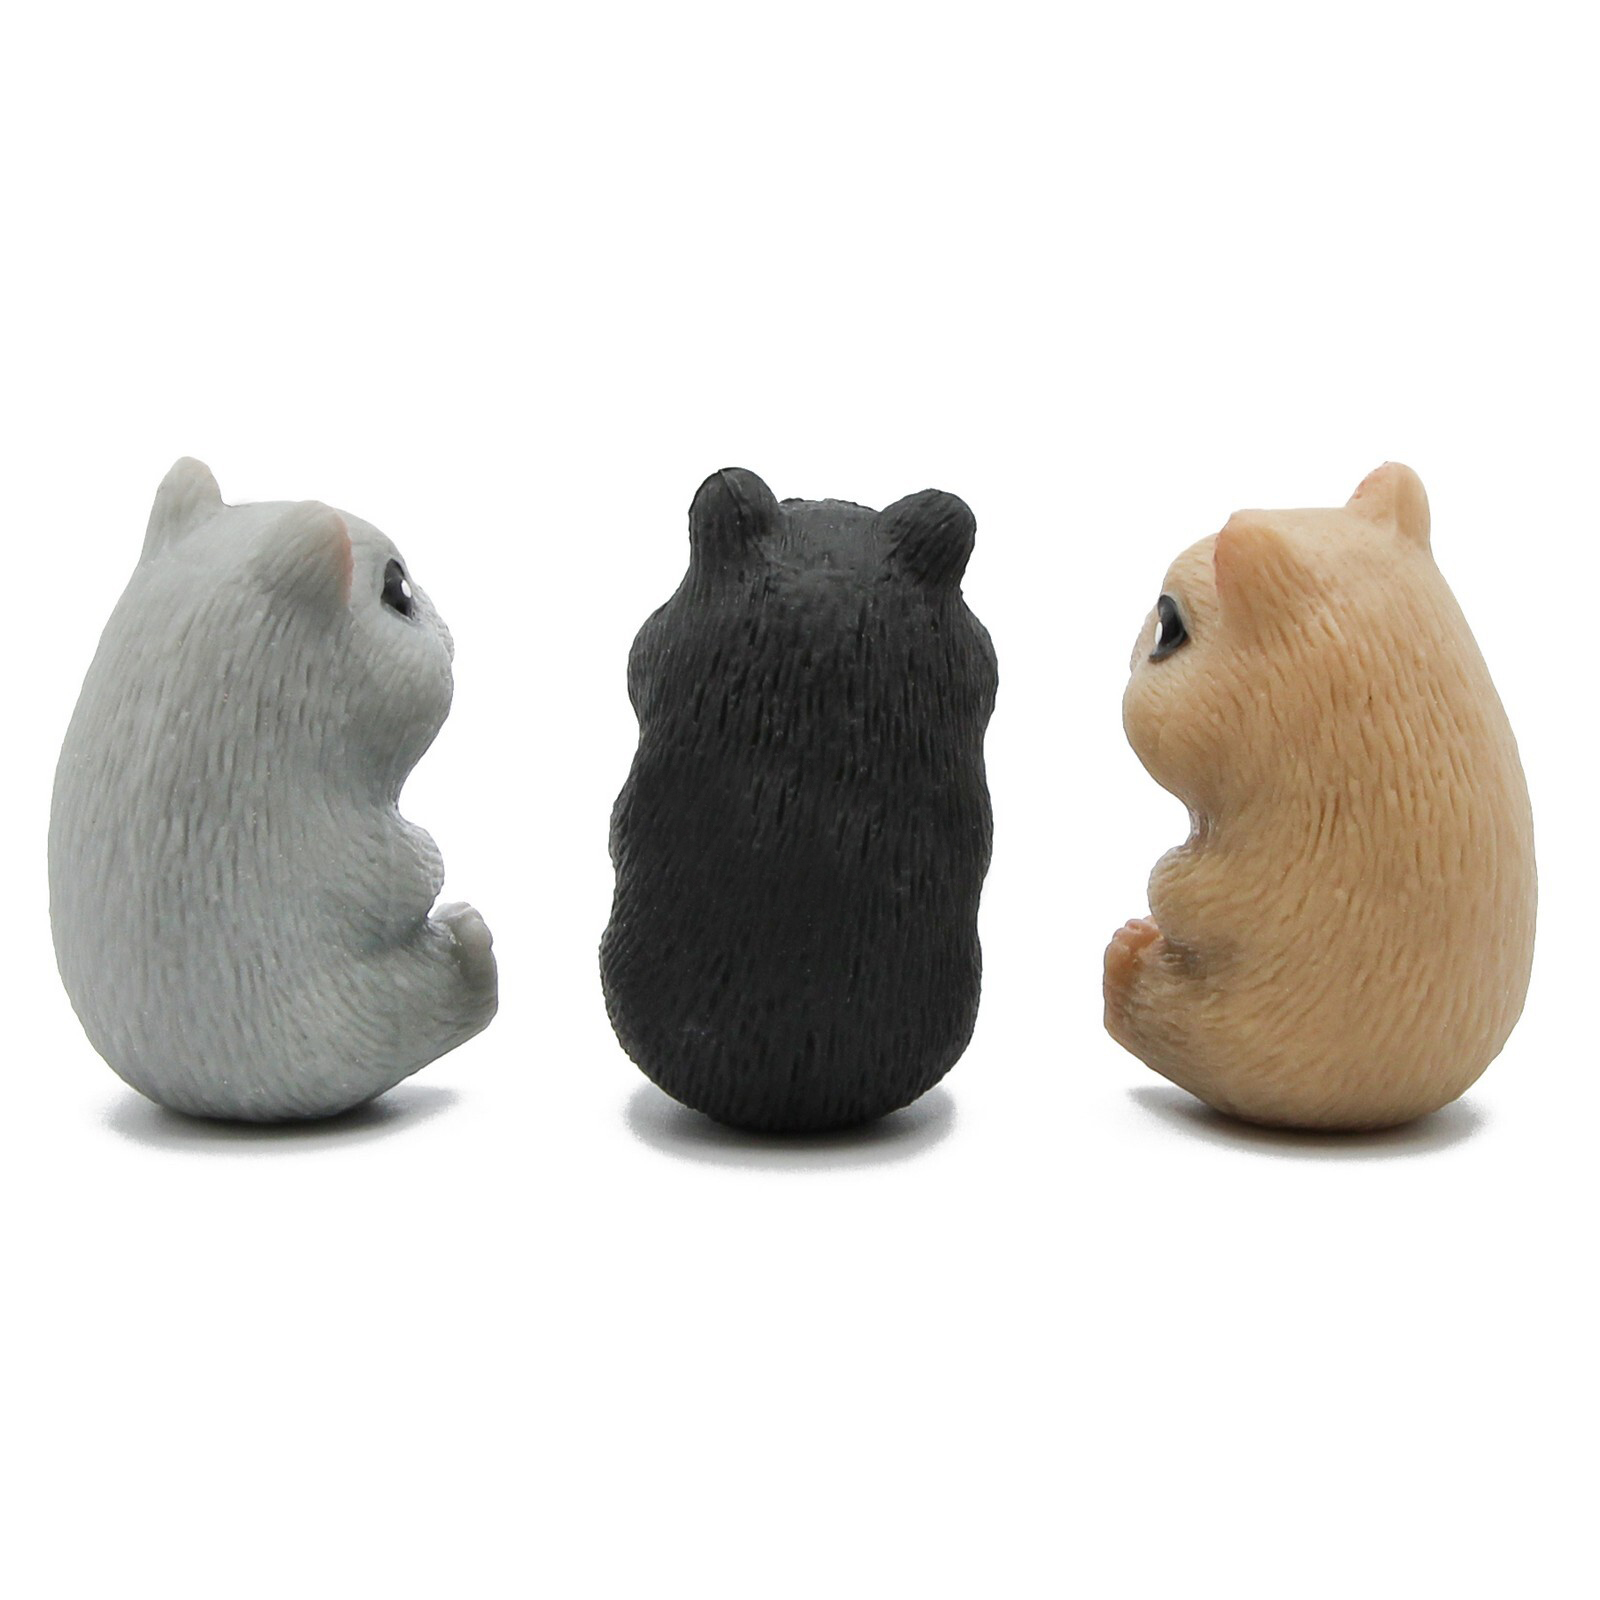 Игрушки резиновые фигурки-тянучки животные «Хомячки» A193-PDQ, 9 см. Антистресс / 3 шт.